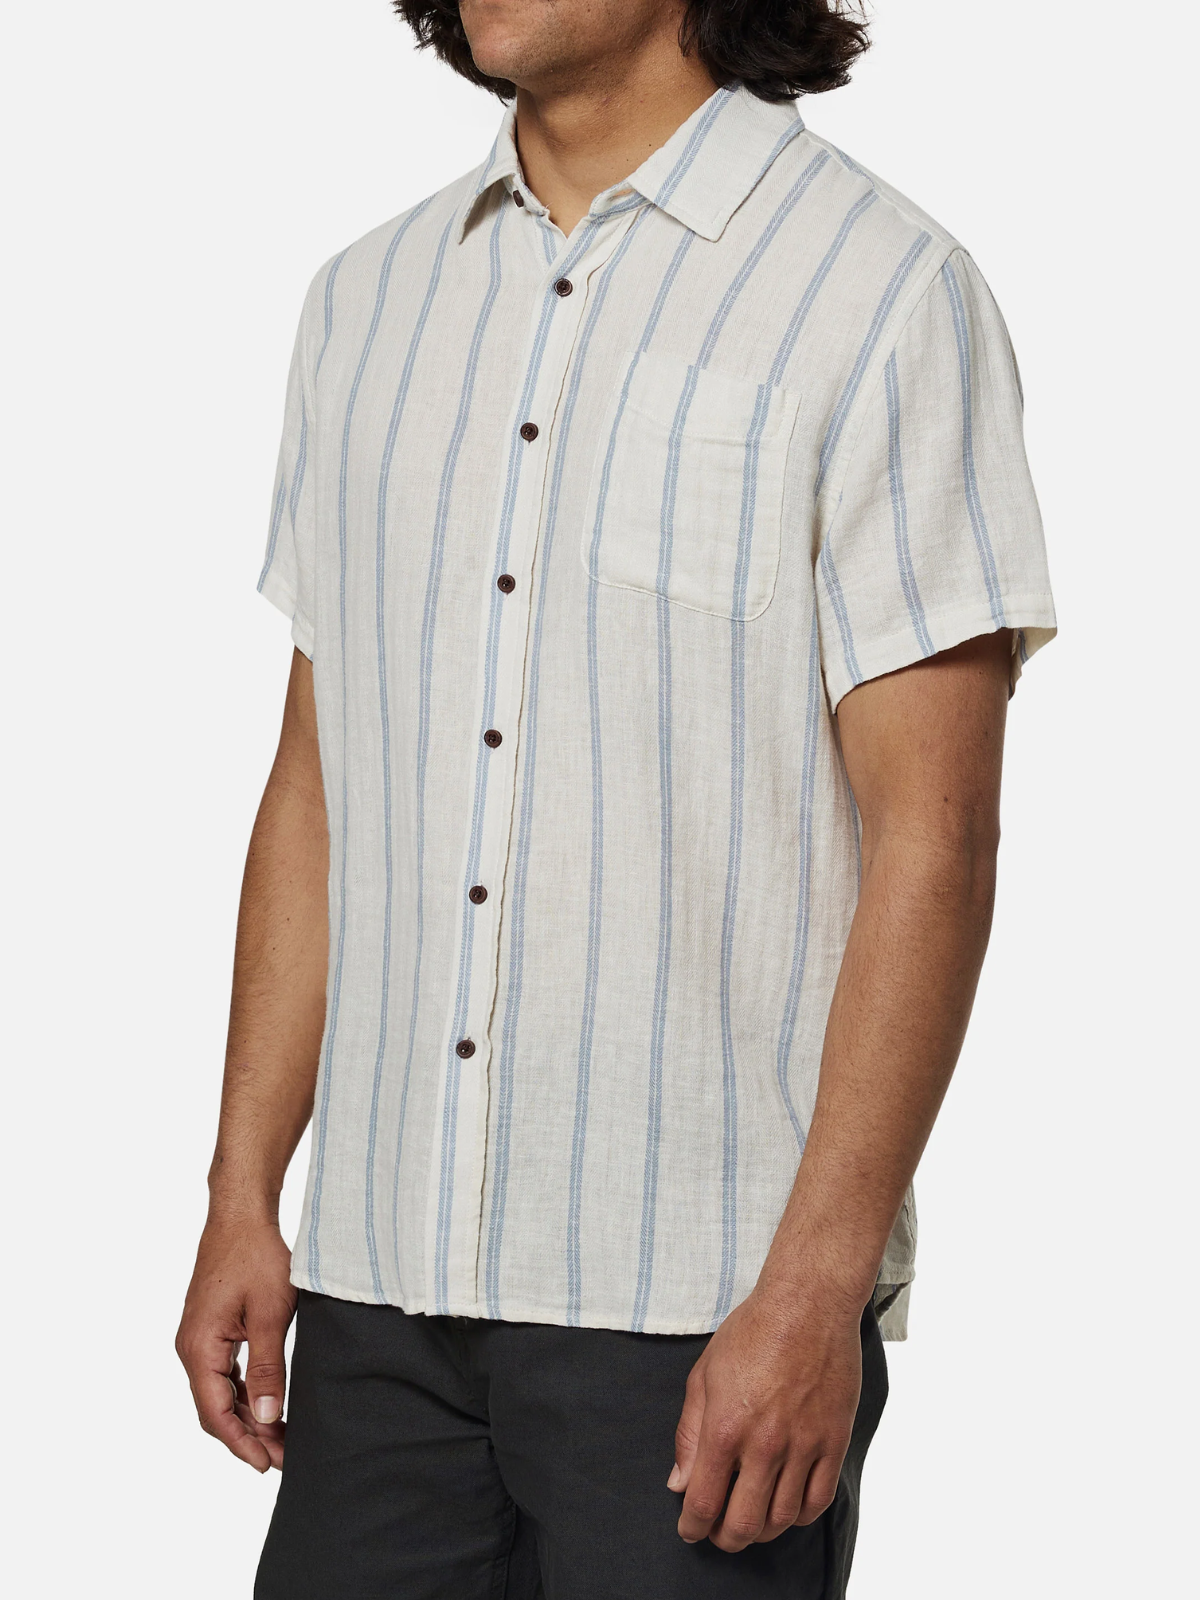 Katin Alan Shirt Vintage White Stripe  Kempt Mens Clothing Store Athens GA UGA